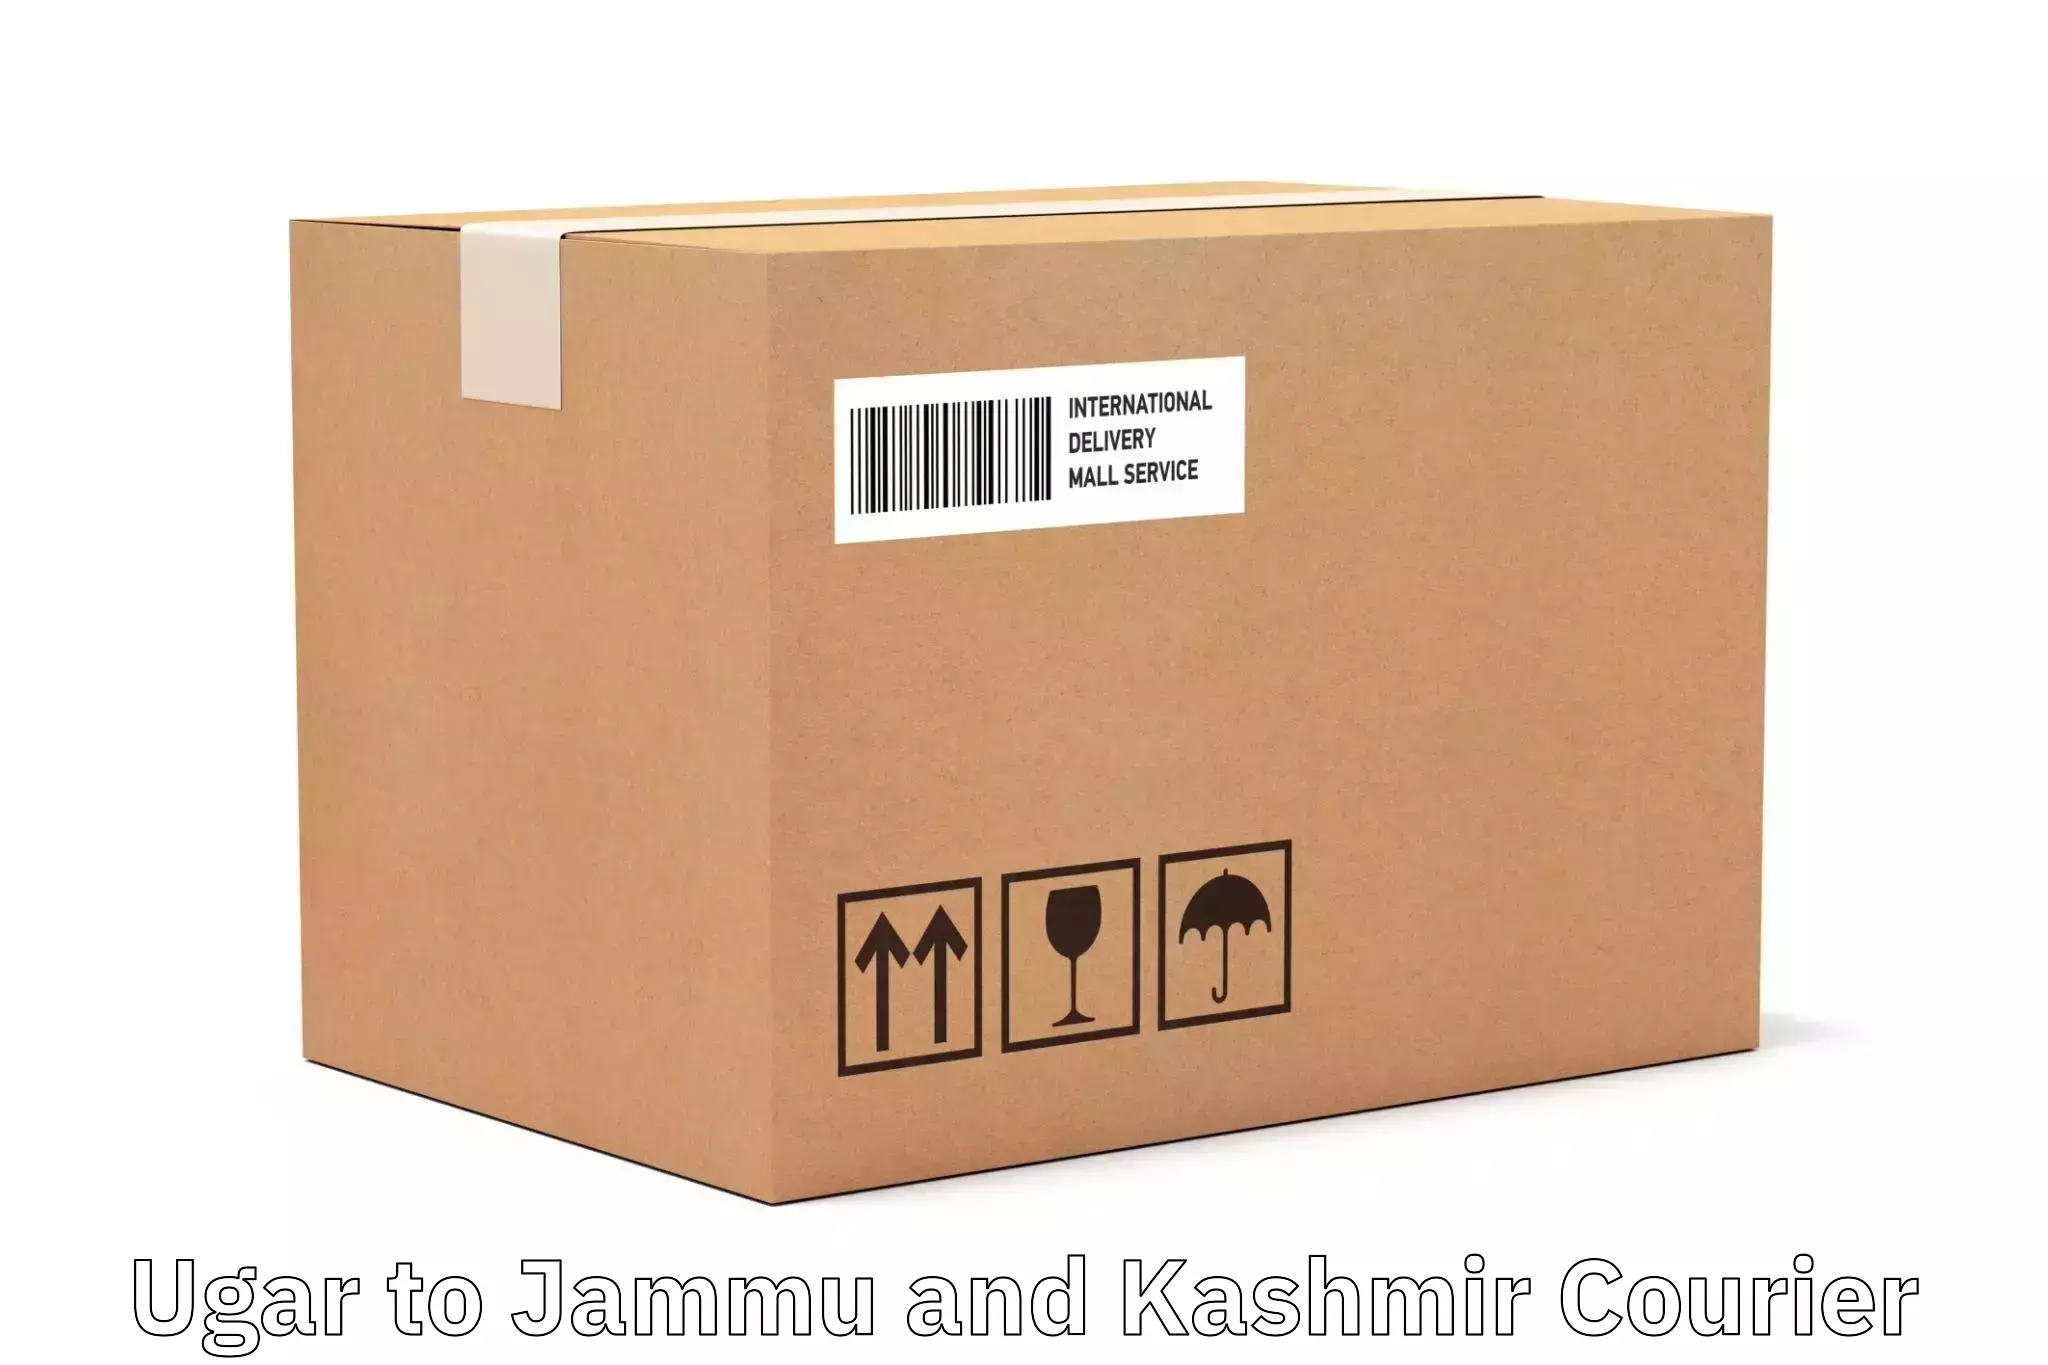 Efficient parcel service Ugar to Jammu and Kashmir